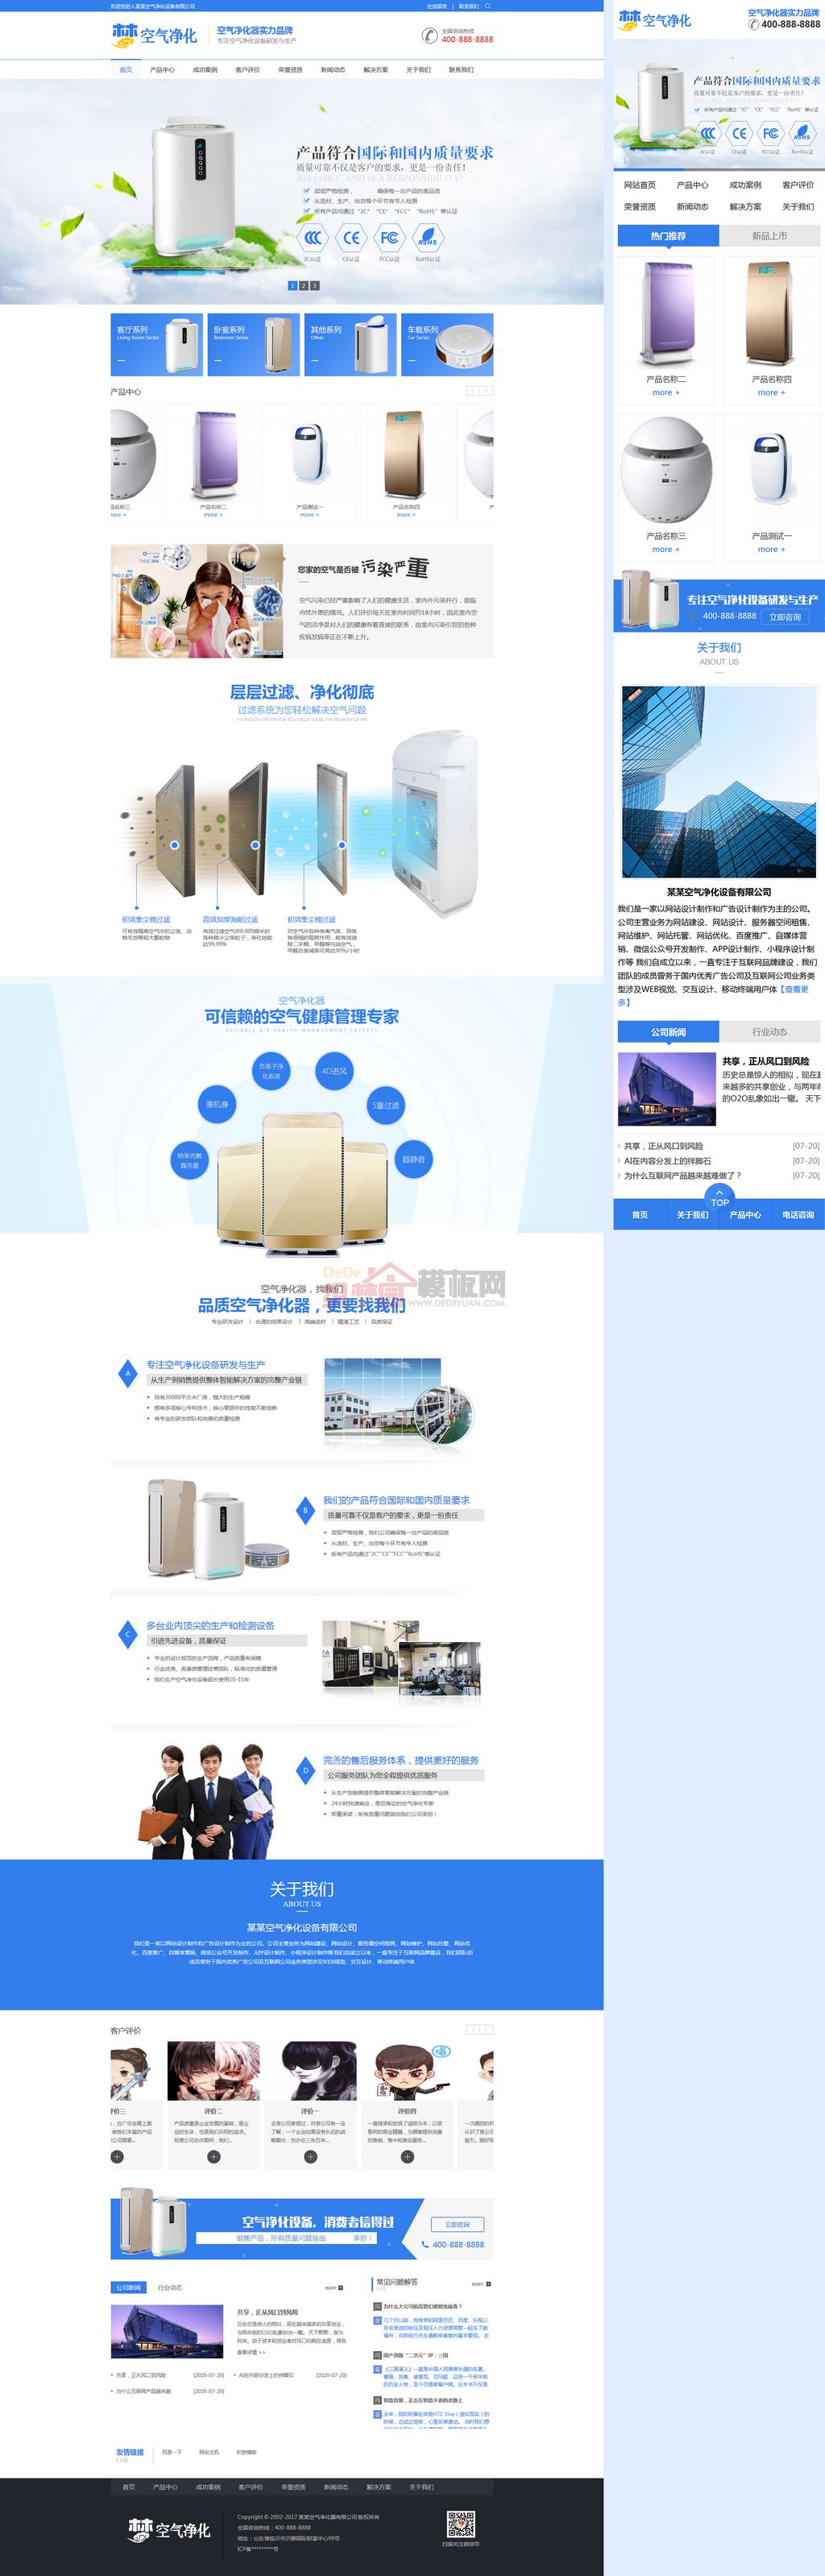 营销型蓝色车载空气净化器设备响应式网站WordPress模板演示图